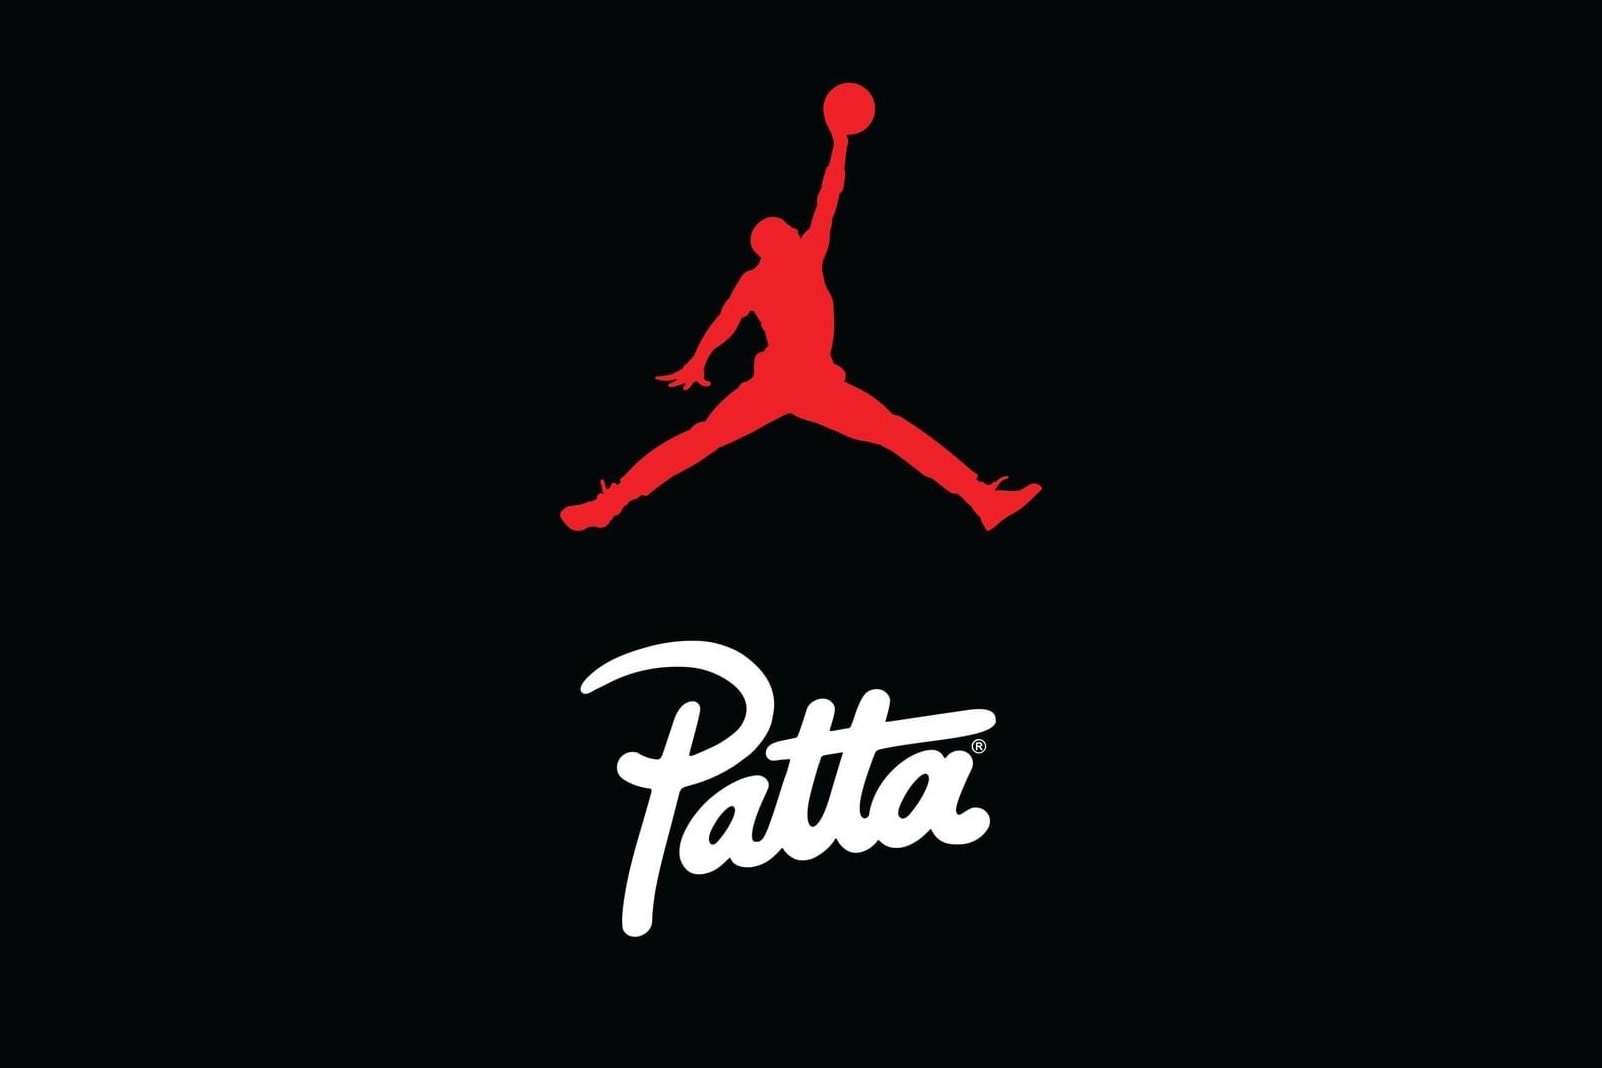 Patta 宣佈將與 Jordan Brand 展開全新聯乘企劃